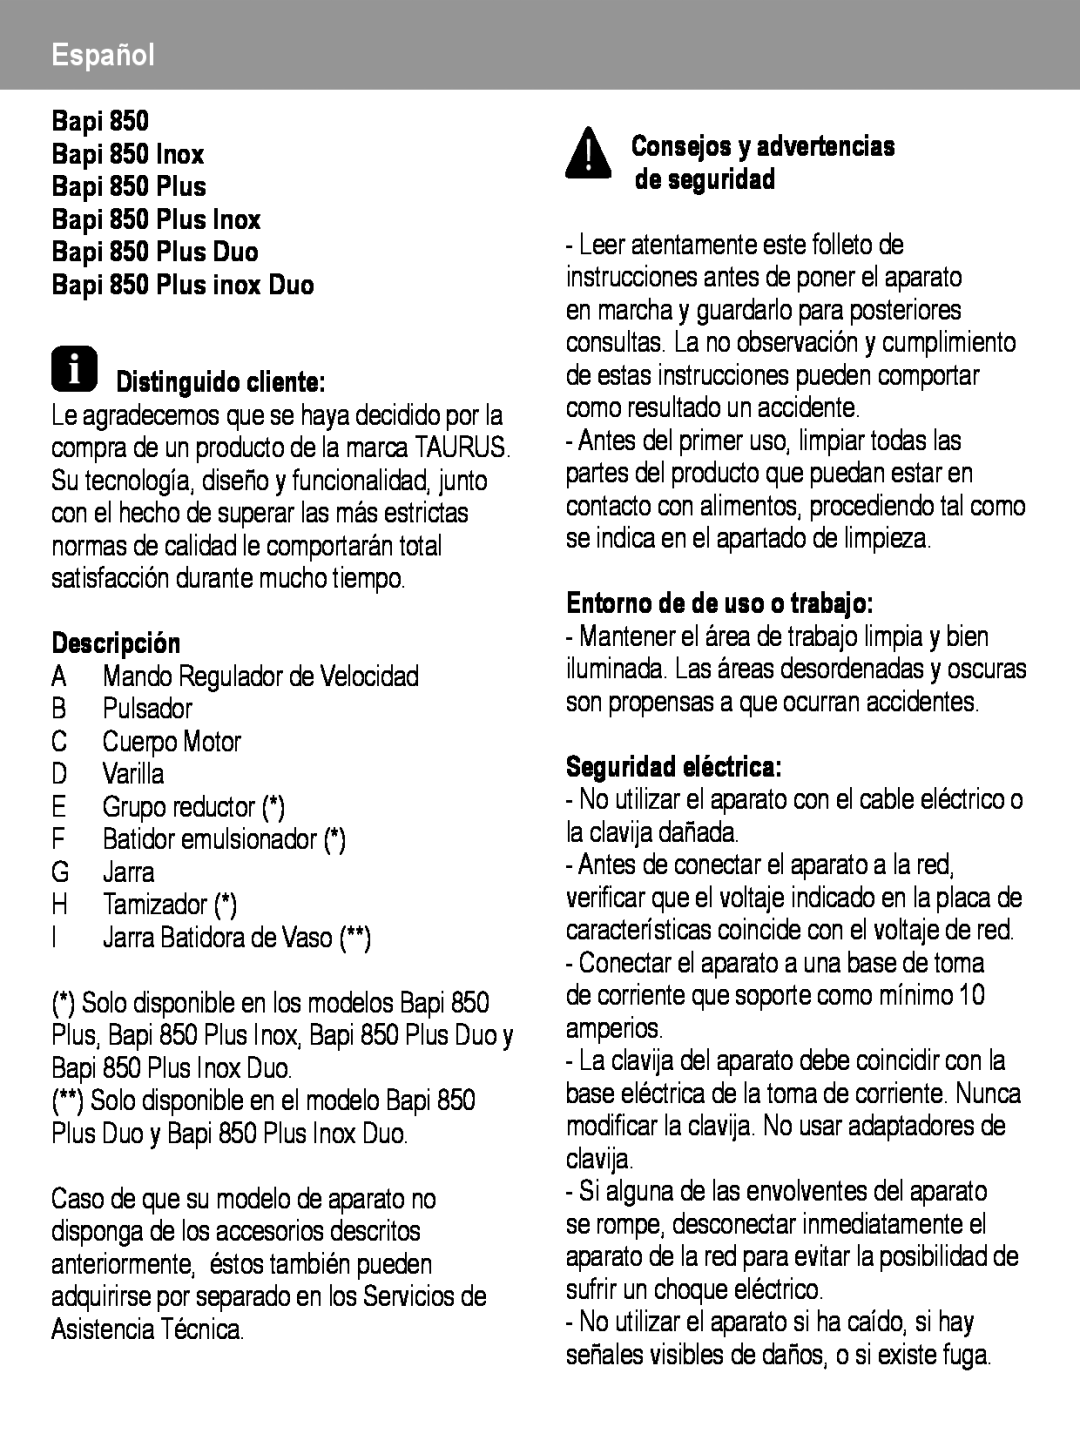 Taurus Group manual Español, Bapi Bapi 850 Inox Bapi 850 Plus Bapi 850 Plus Inox Bapi 850 Plus Duo, Descripción 